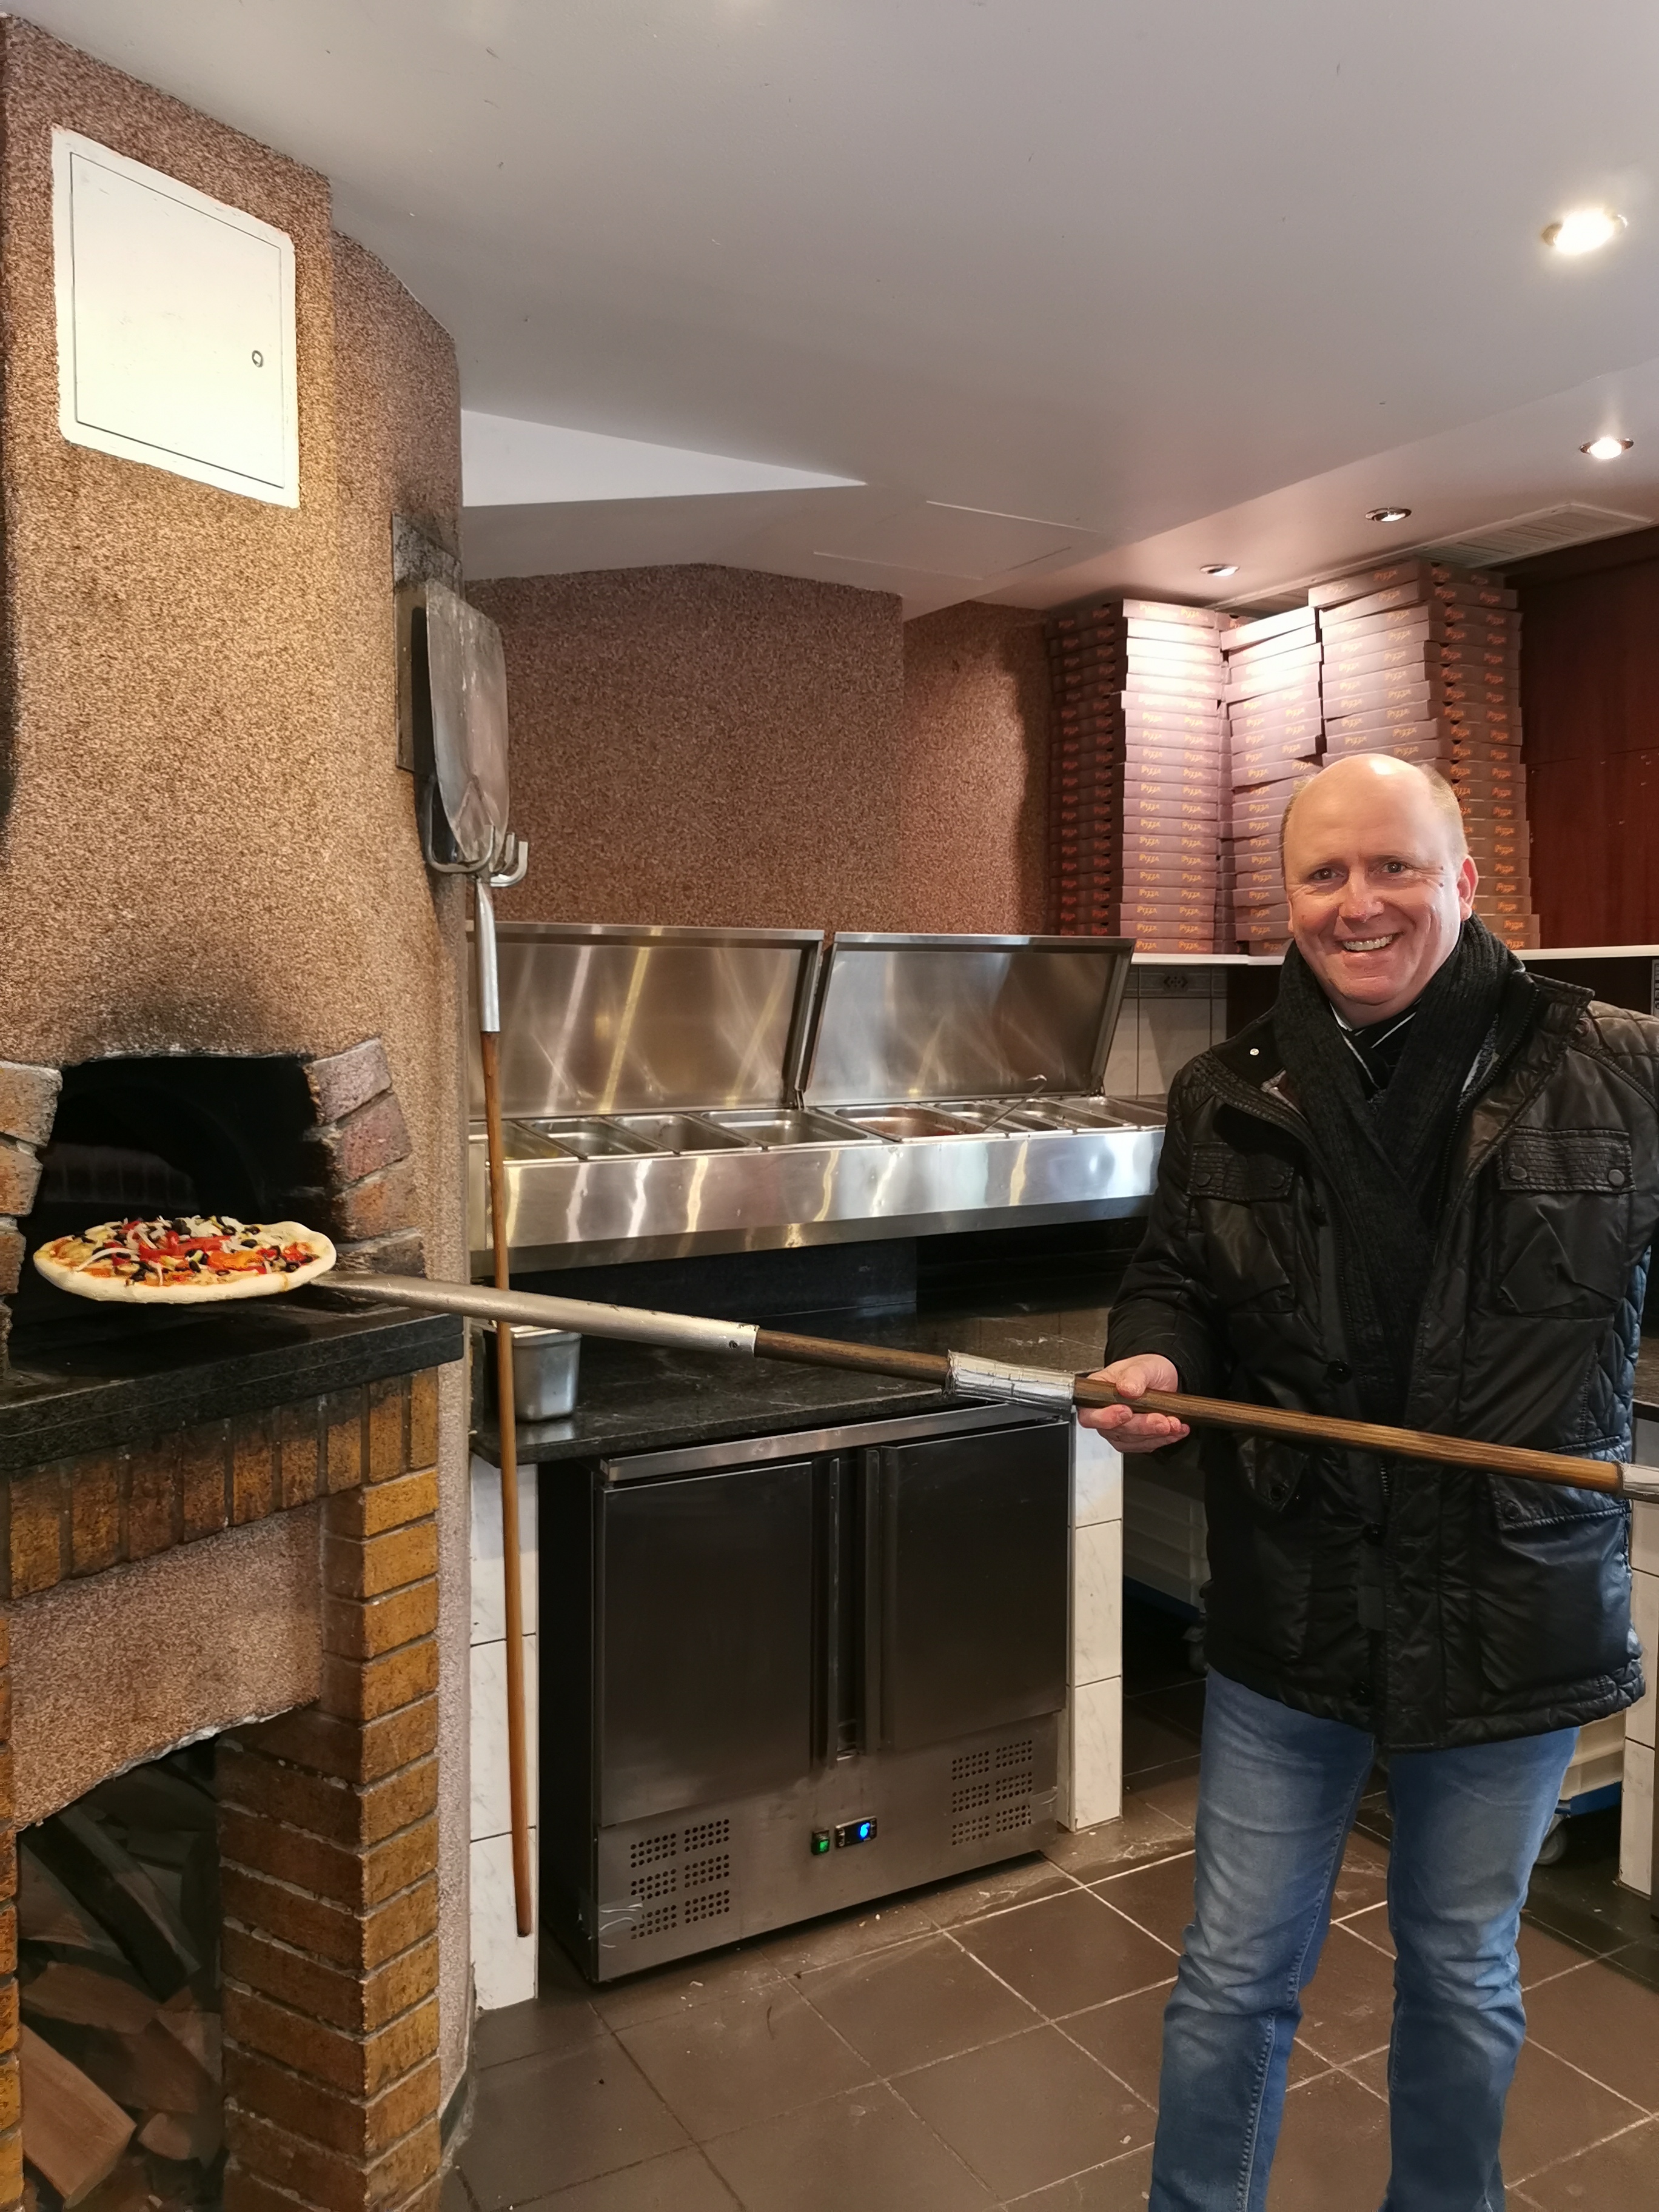 Unser OB-Kandidat Uwe Becker erwies sich als talentierter Pizza Bäcker im 'Il Quadrofoglio' in Praunheim.